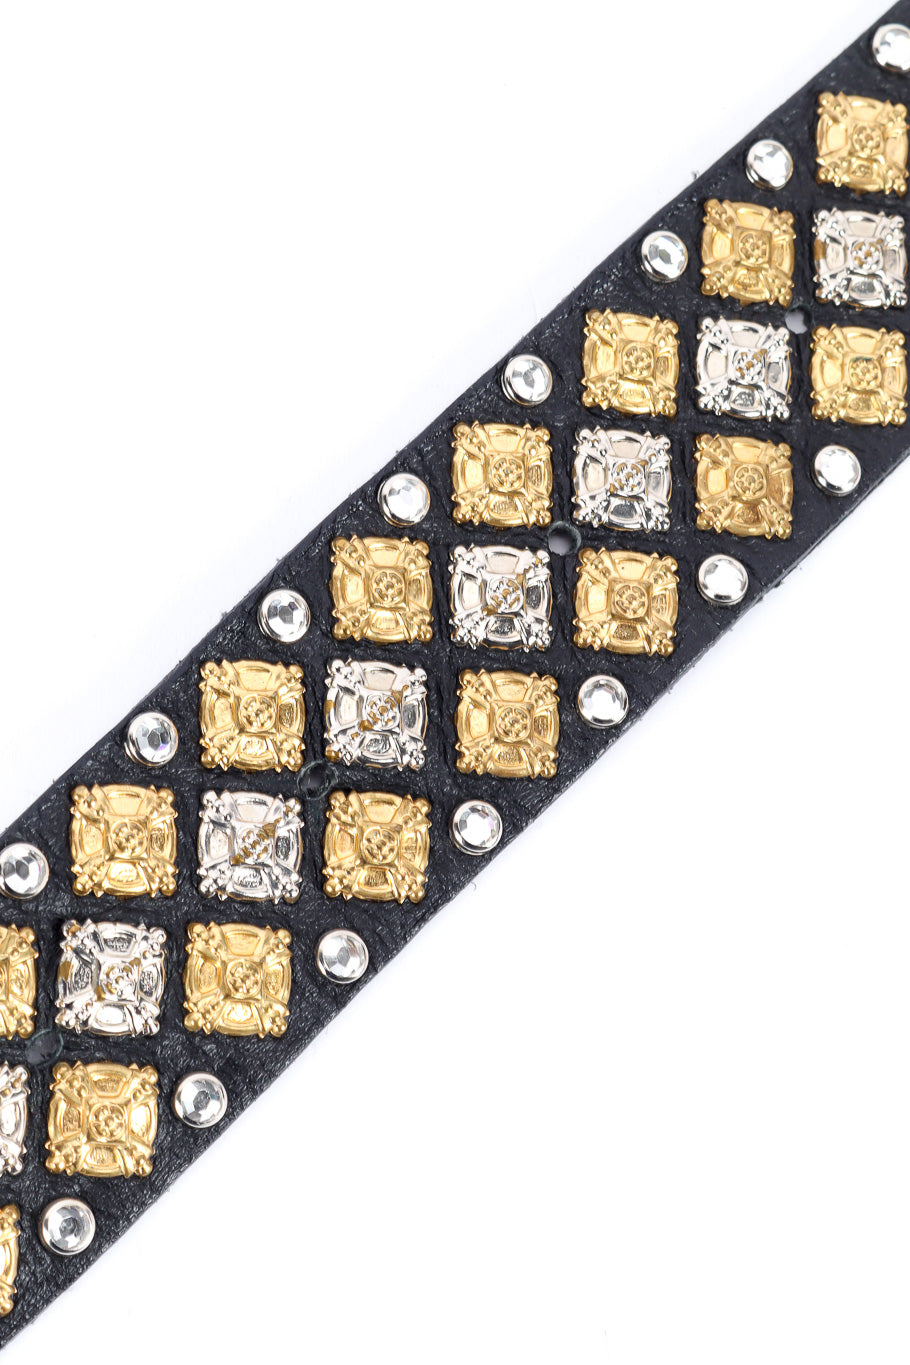 Michael Morrison crystal studded leather belt details @recessla